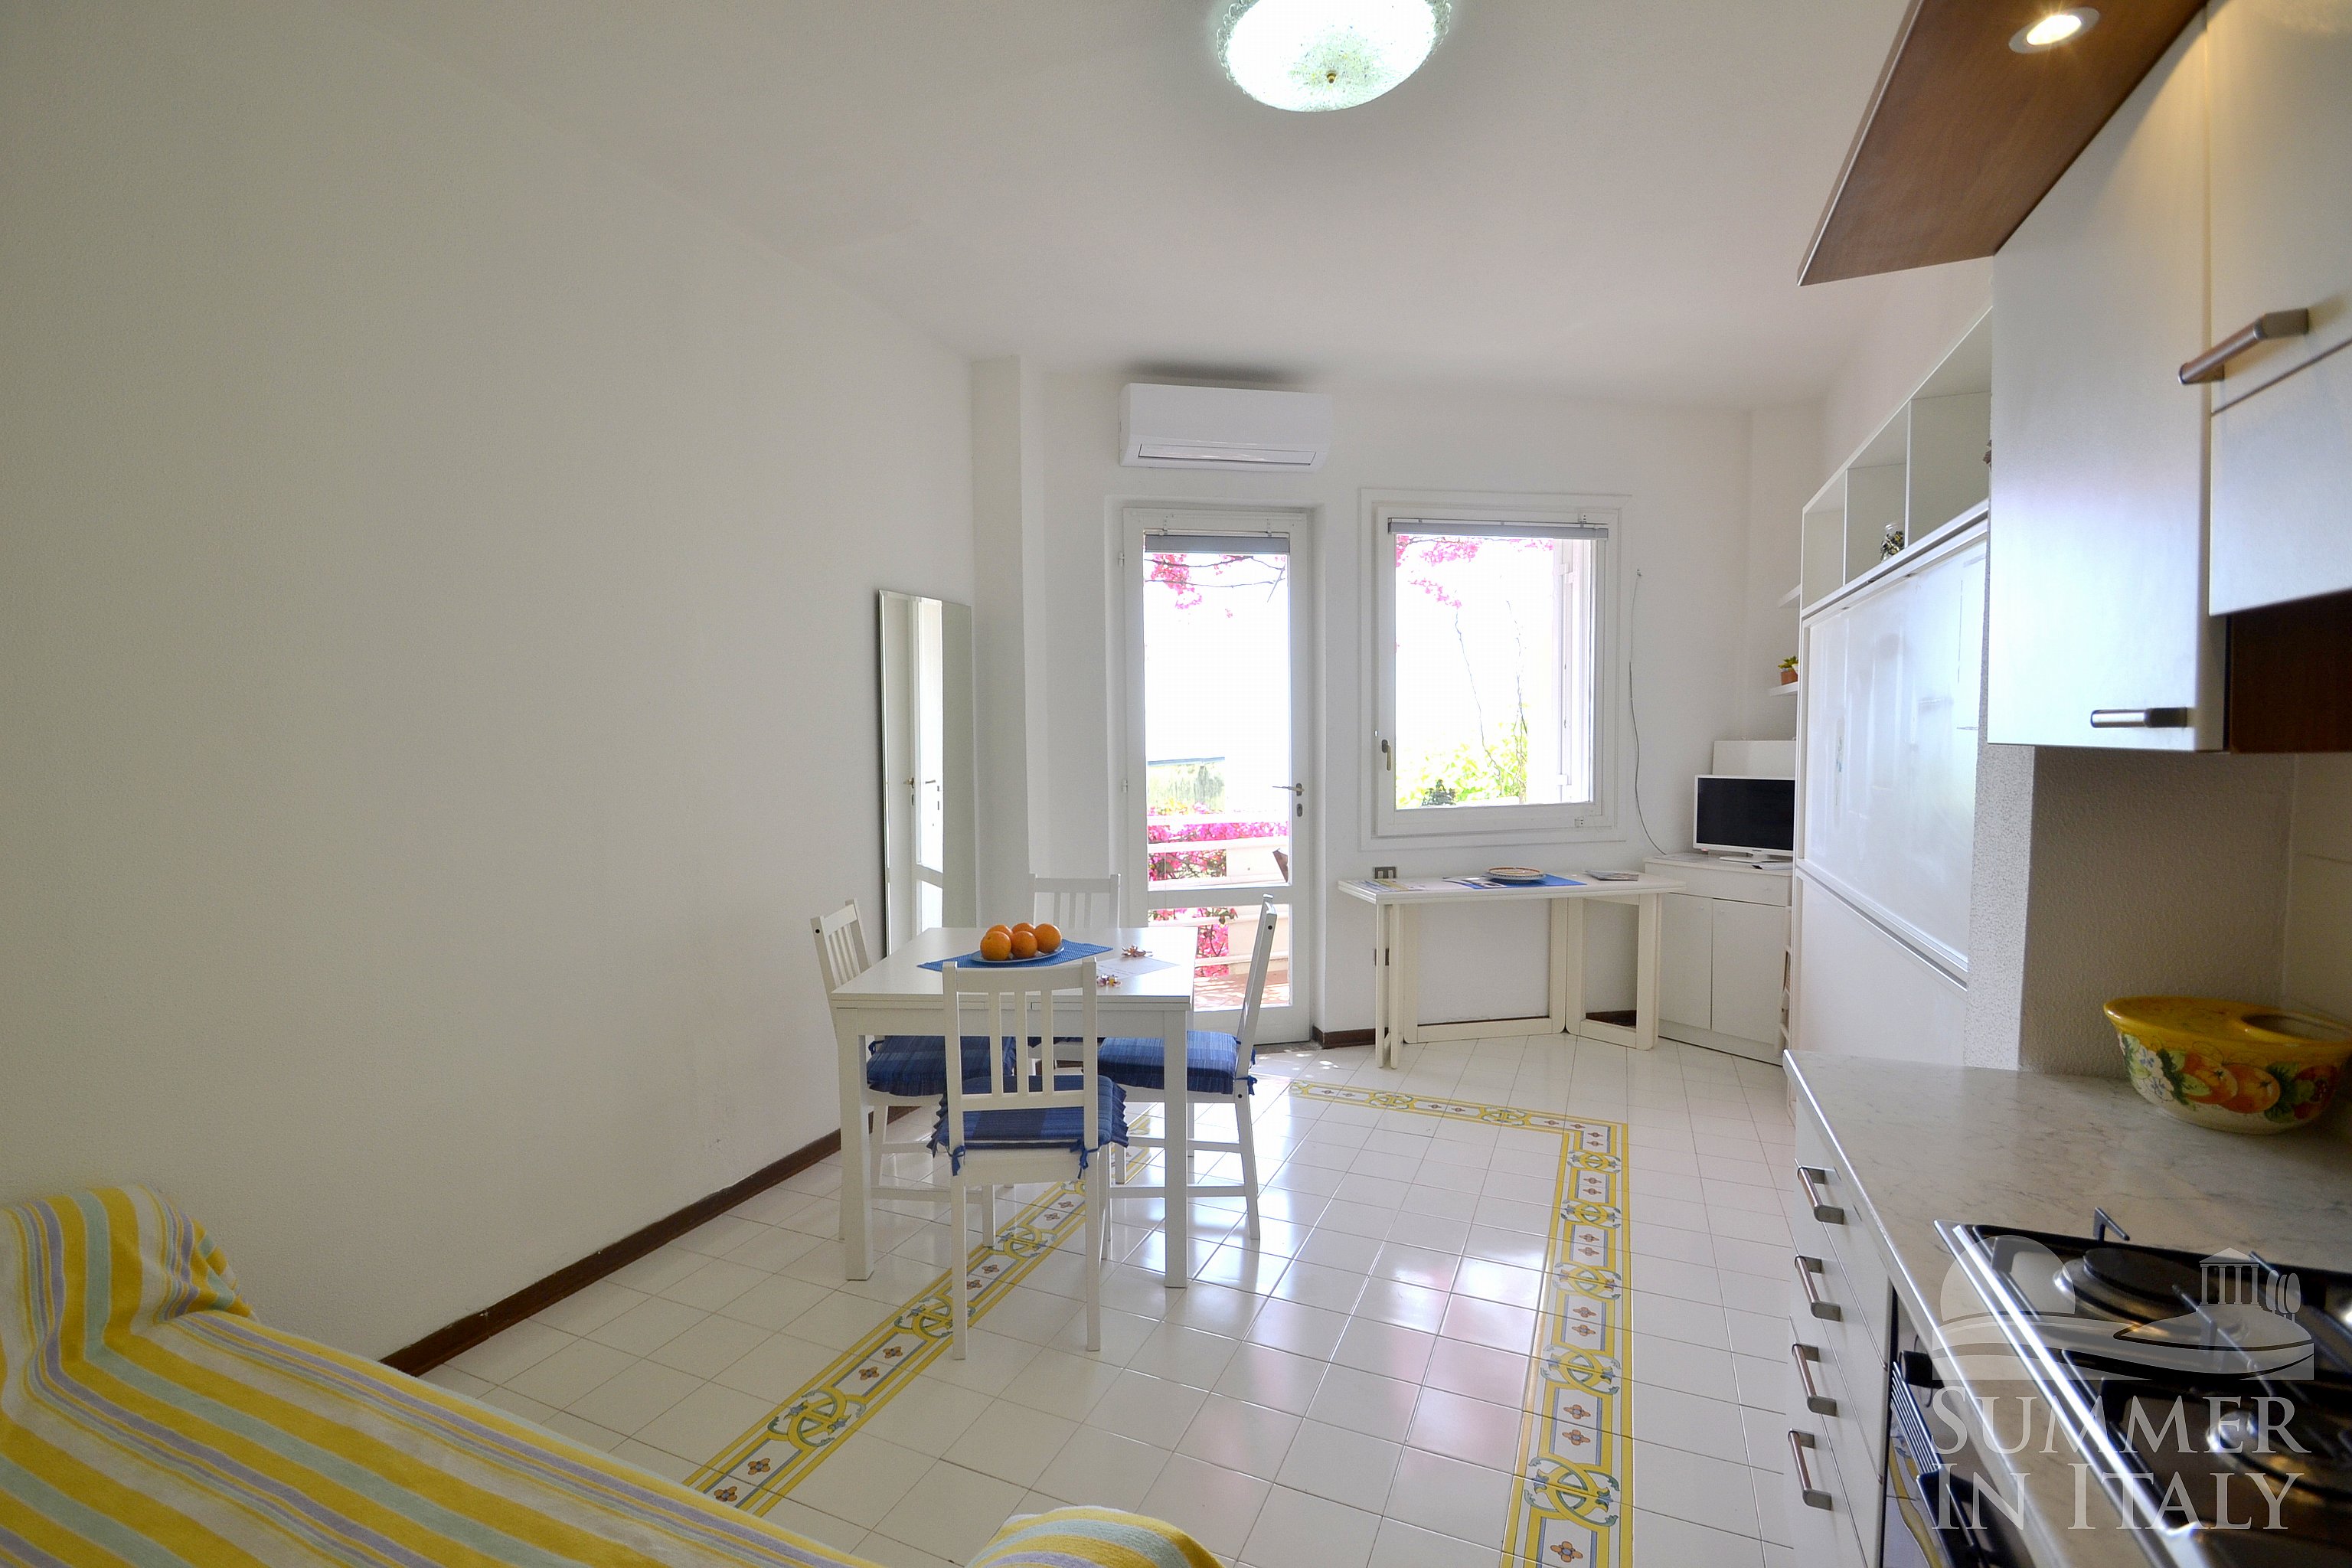 Casa Aminata: Self catering accommodation in Positano, Amalfi Coast, Italy